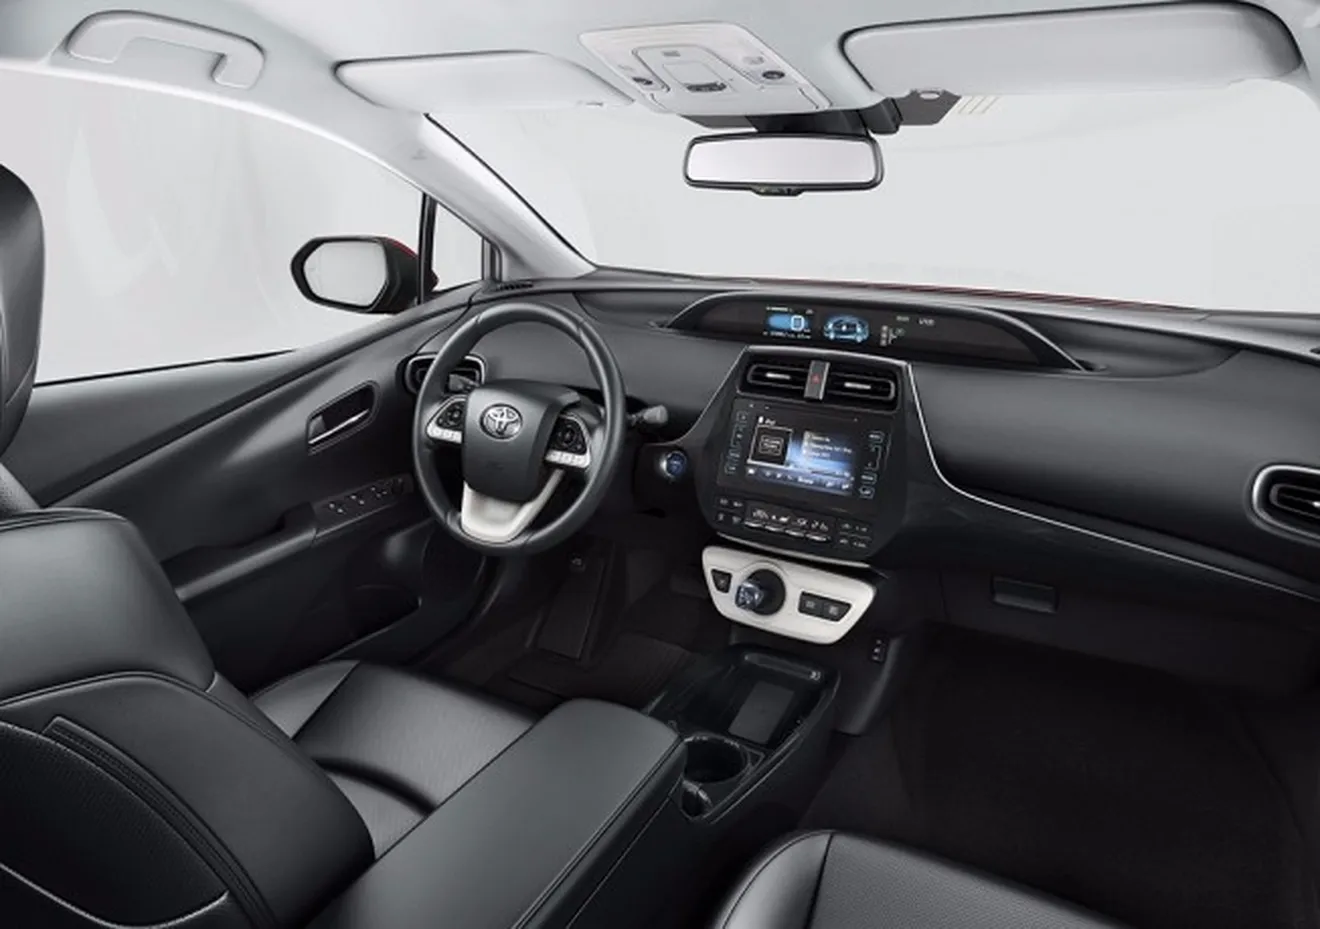 Toyota Prius 2017 - interior